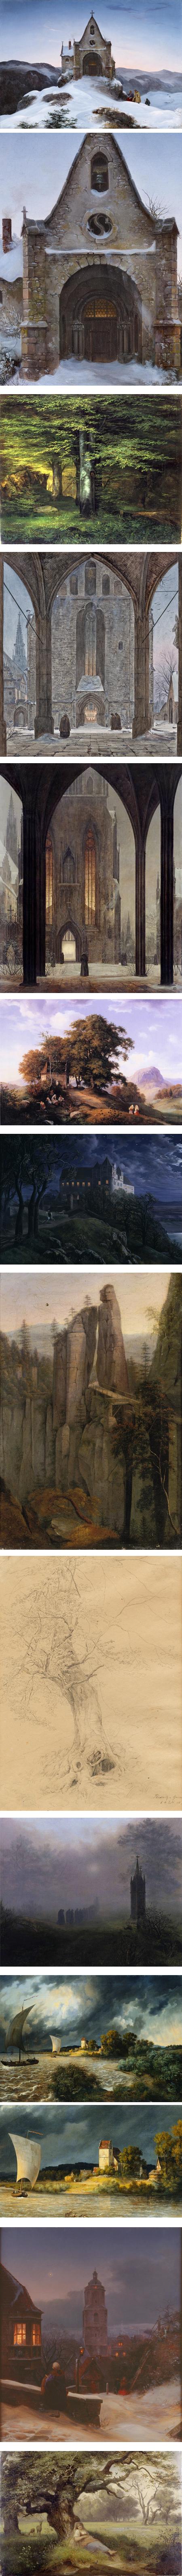 Ernst Ferdinand Oehme, German Romantic landscape painter